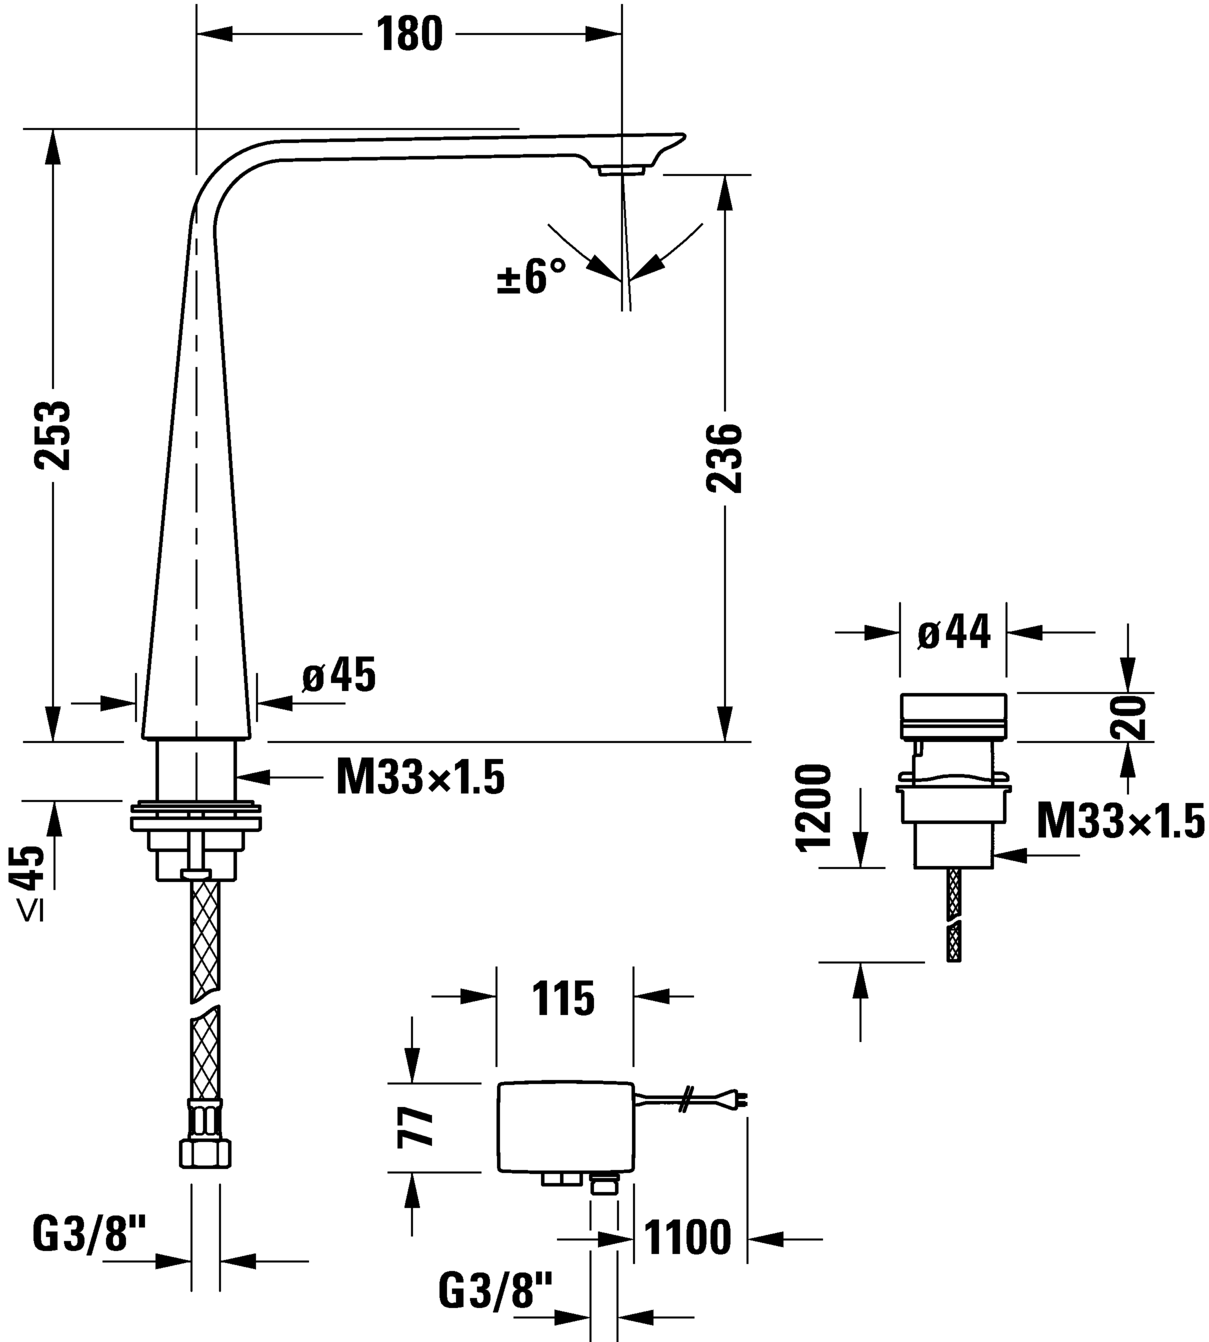 Rubinetteria elettronica a 2 fori XL con alimentatore a spina, D11110007